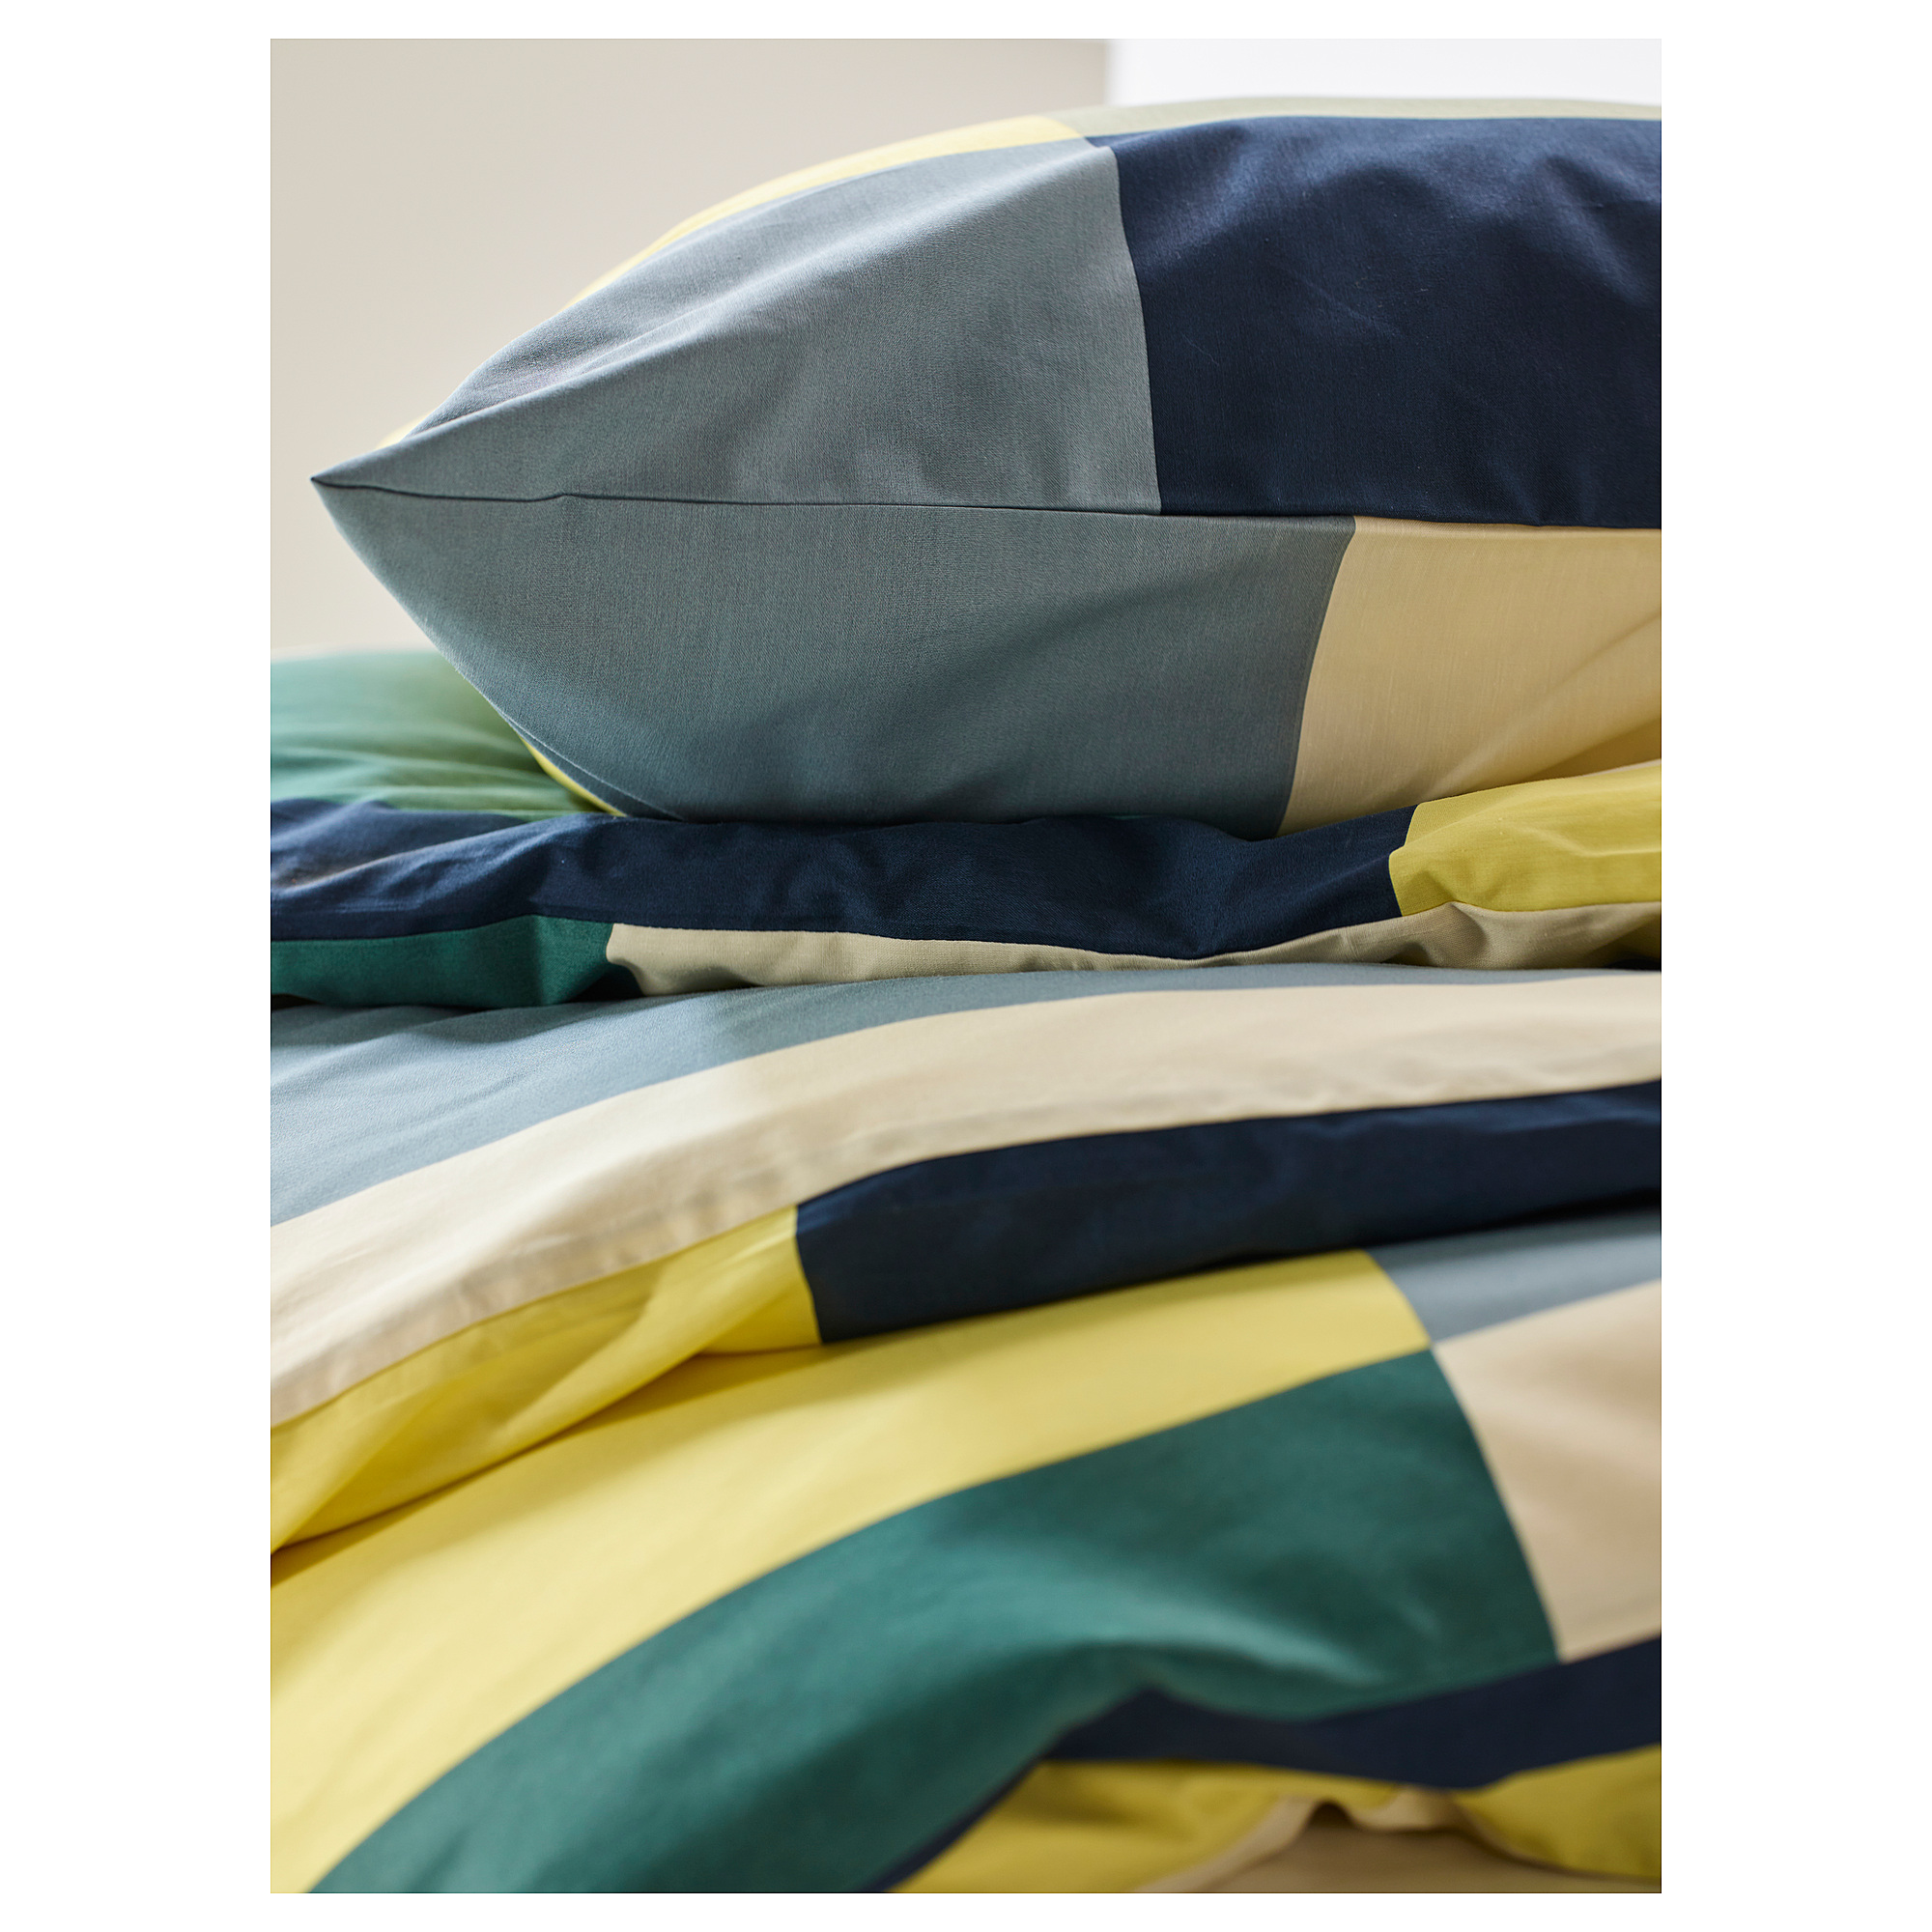 BRUNKRISSLA duvet cover and 2 pillowcases